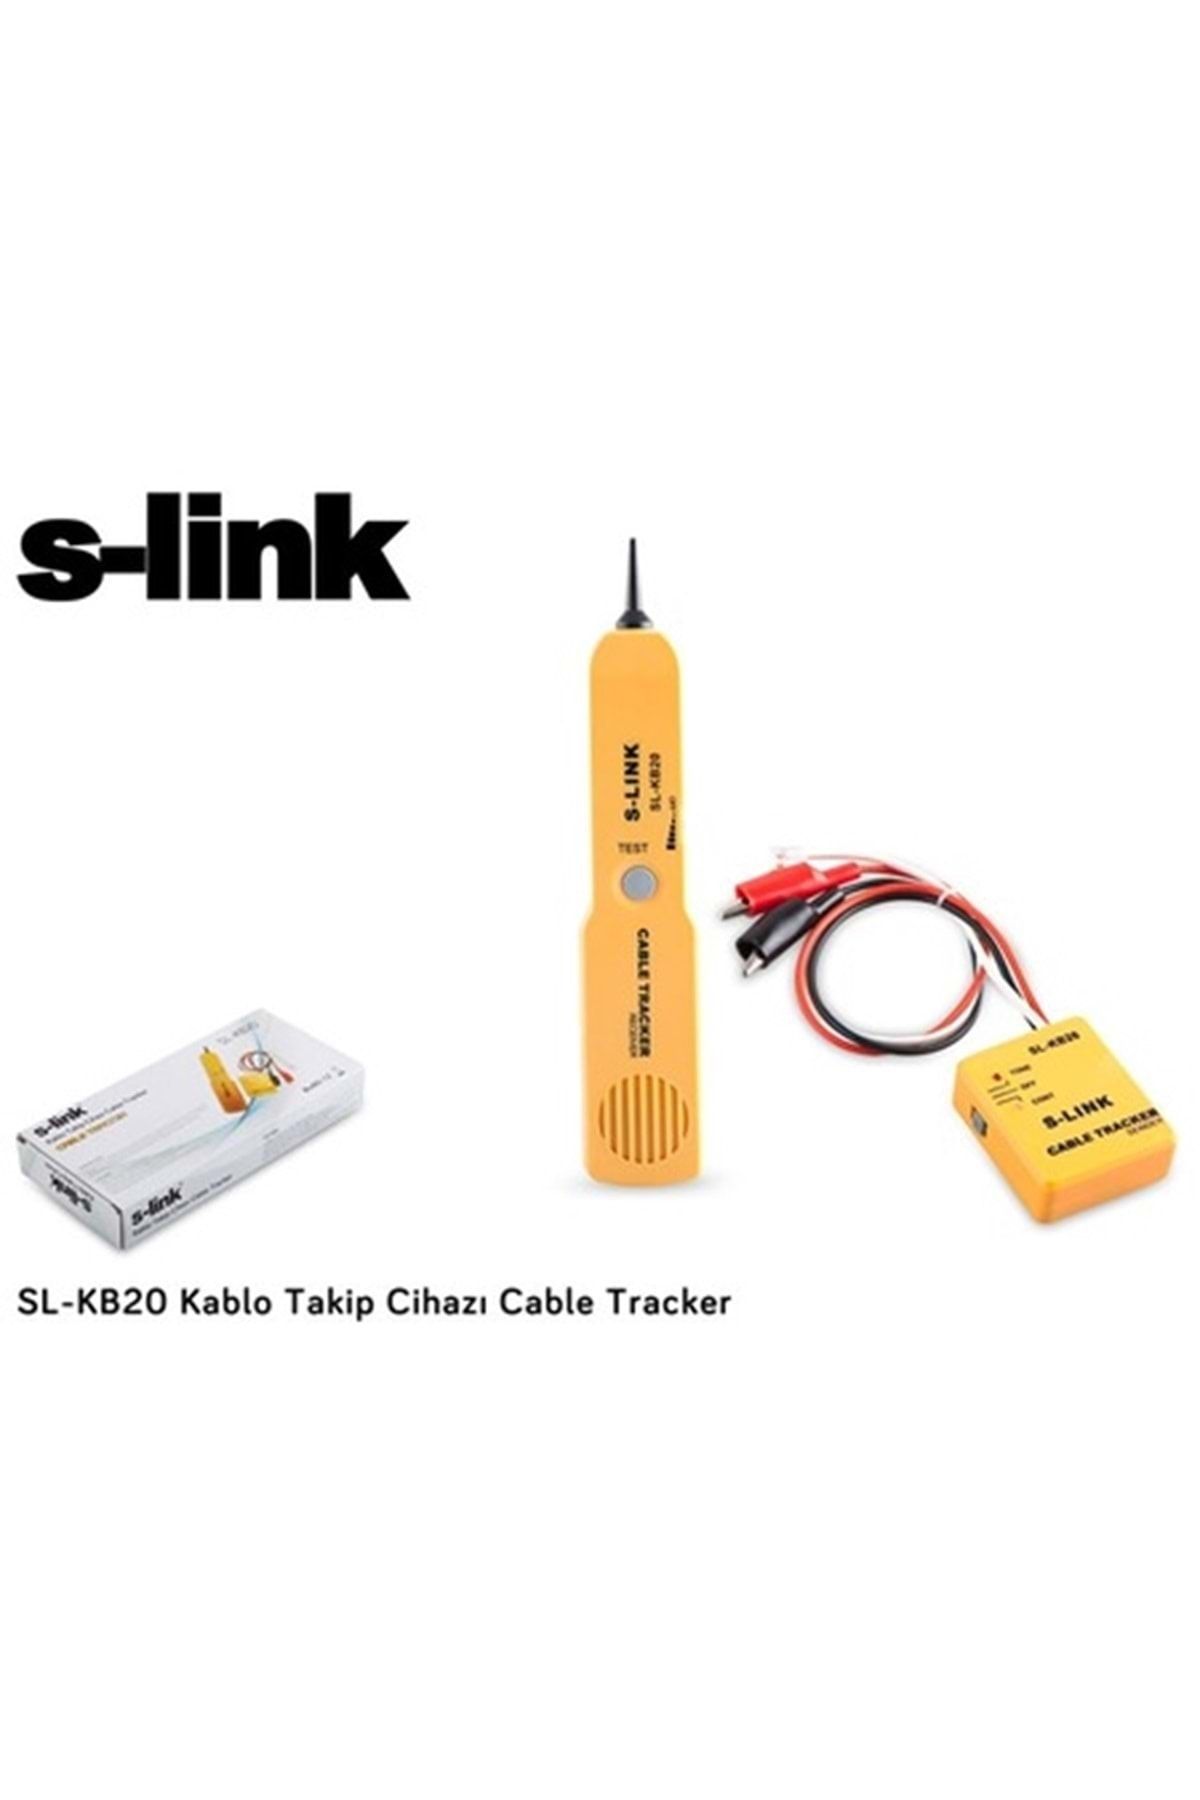 S-Link Sl-kb20 Kablo Takip Cihazı Kablo Bulucu Tracker